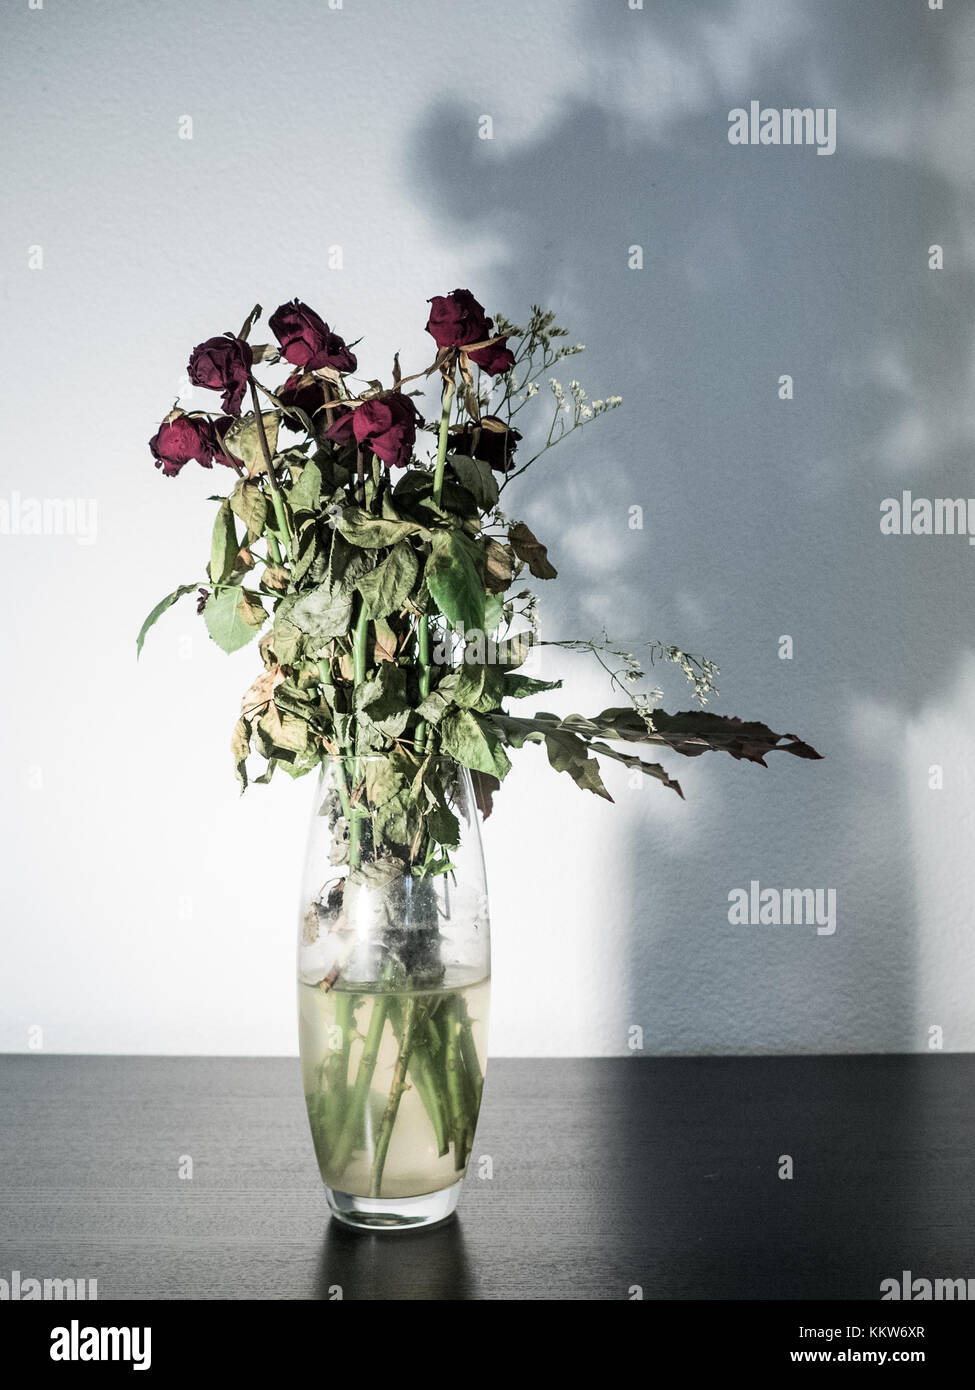 Ramo de flores marchitas en un jarrón de cristal Foto de stock